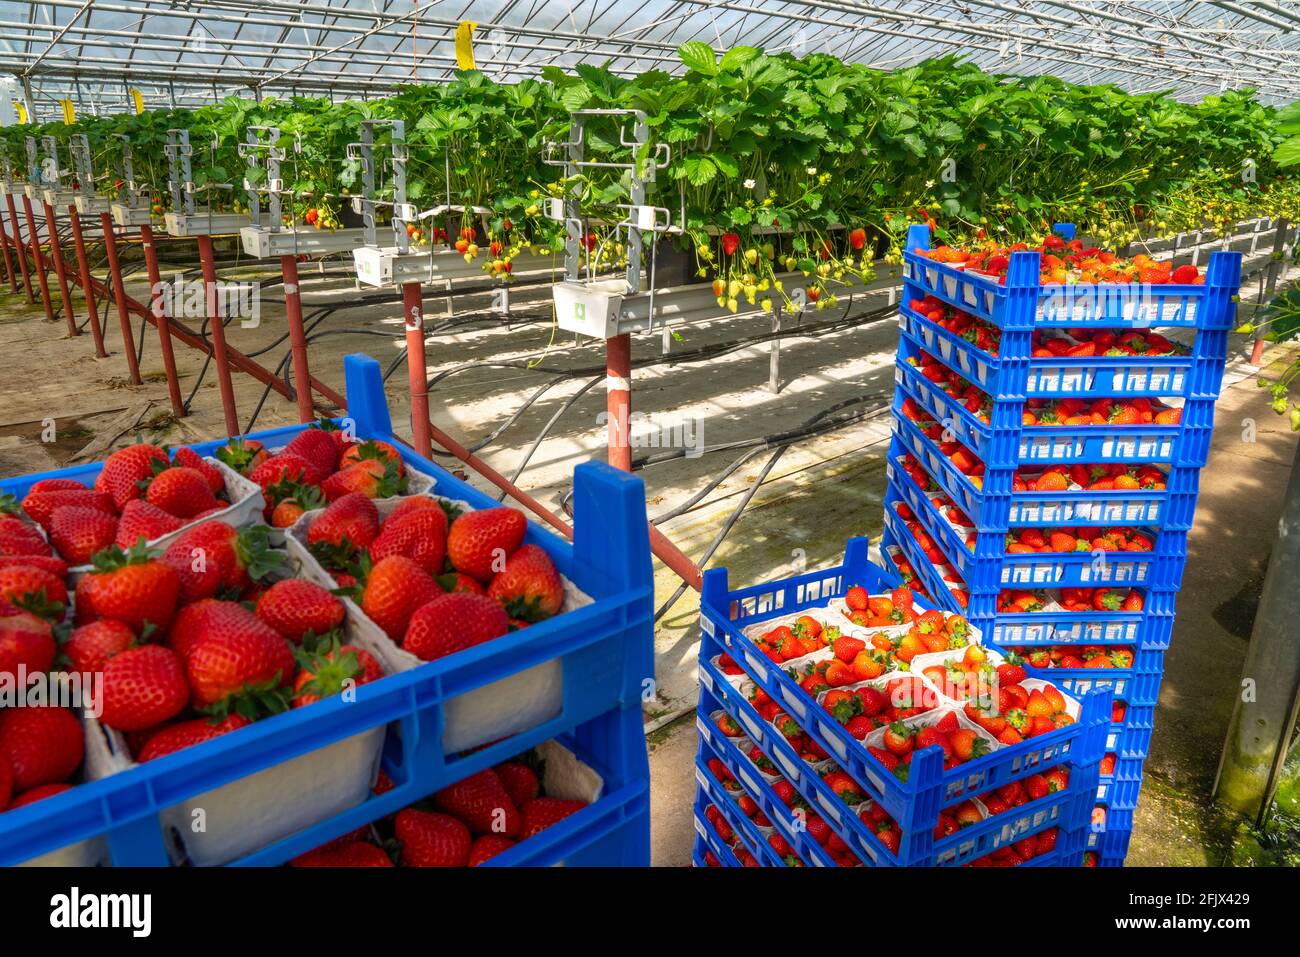 Frisch geerntete Erdbeeren, verpackt in Schachteln und Kästen für den Verbraucher, Erdbeeranbau im Gewächshaus, junge Erdbeerpflanzen wachsen heran, Foto Stock